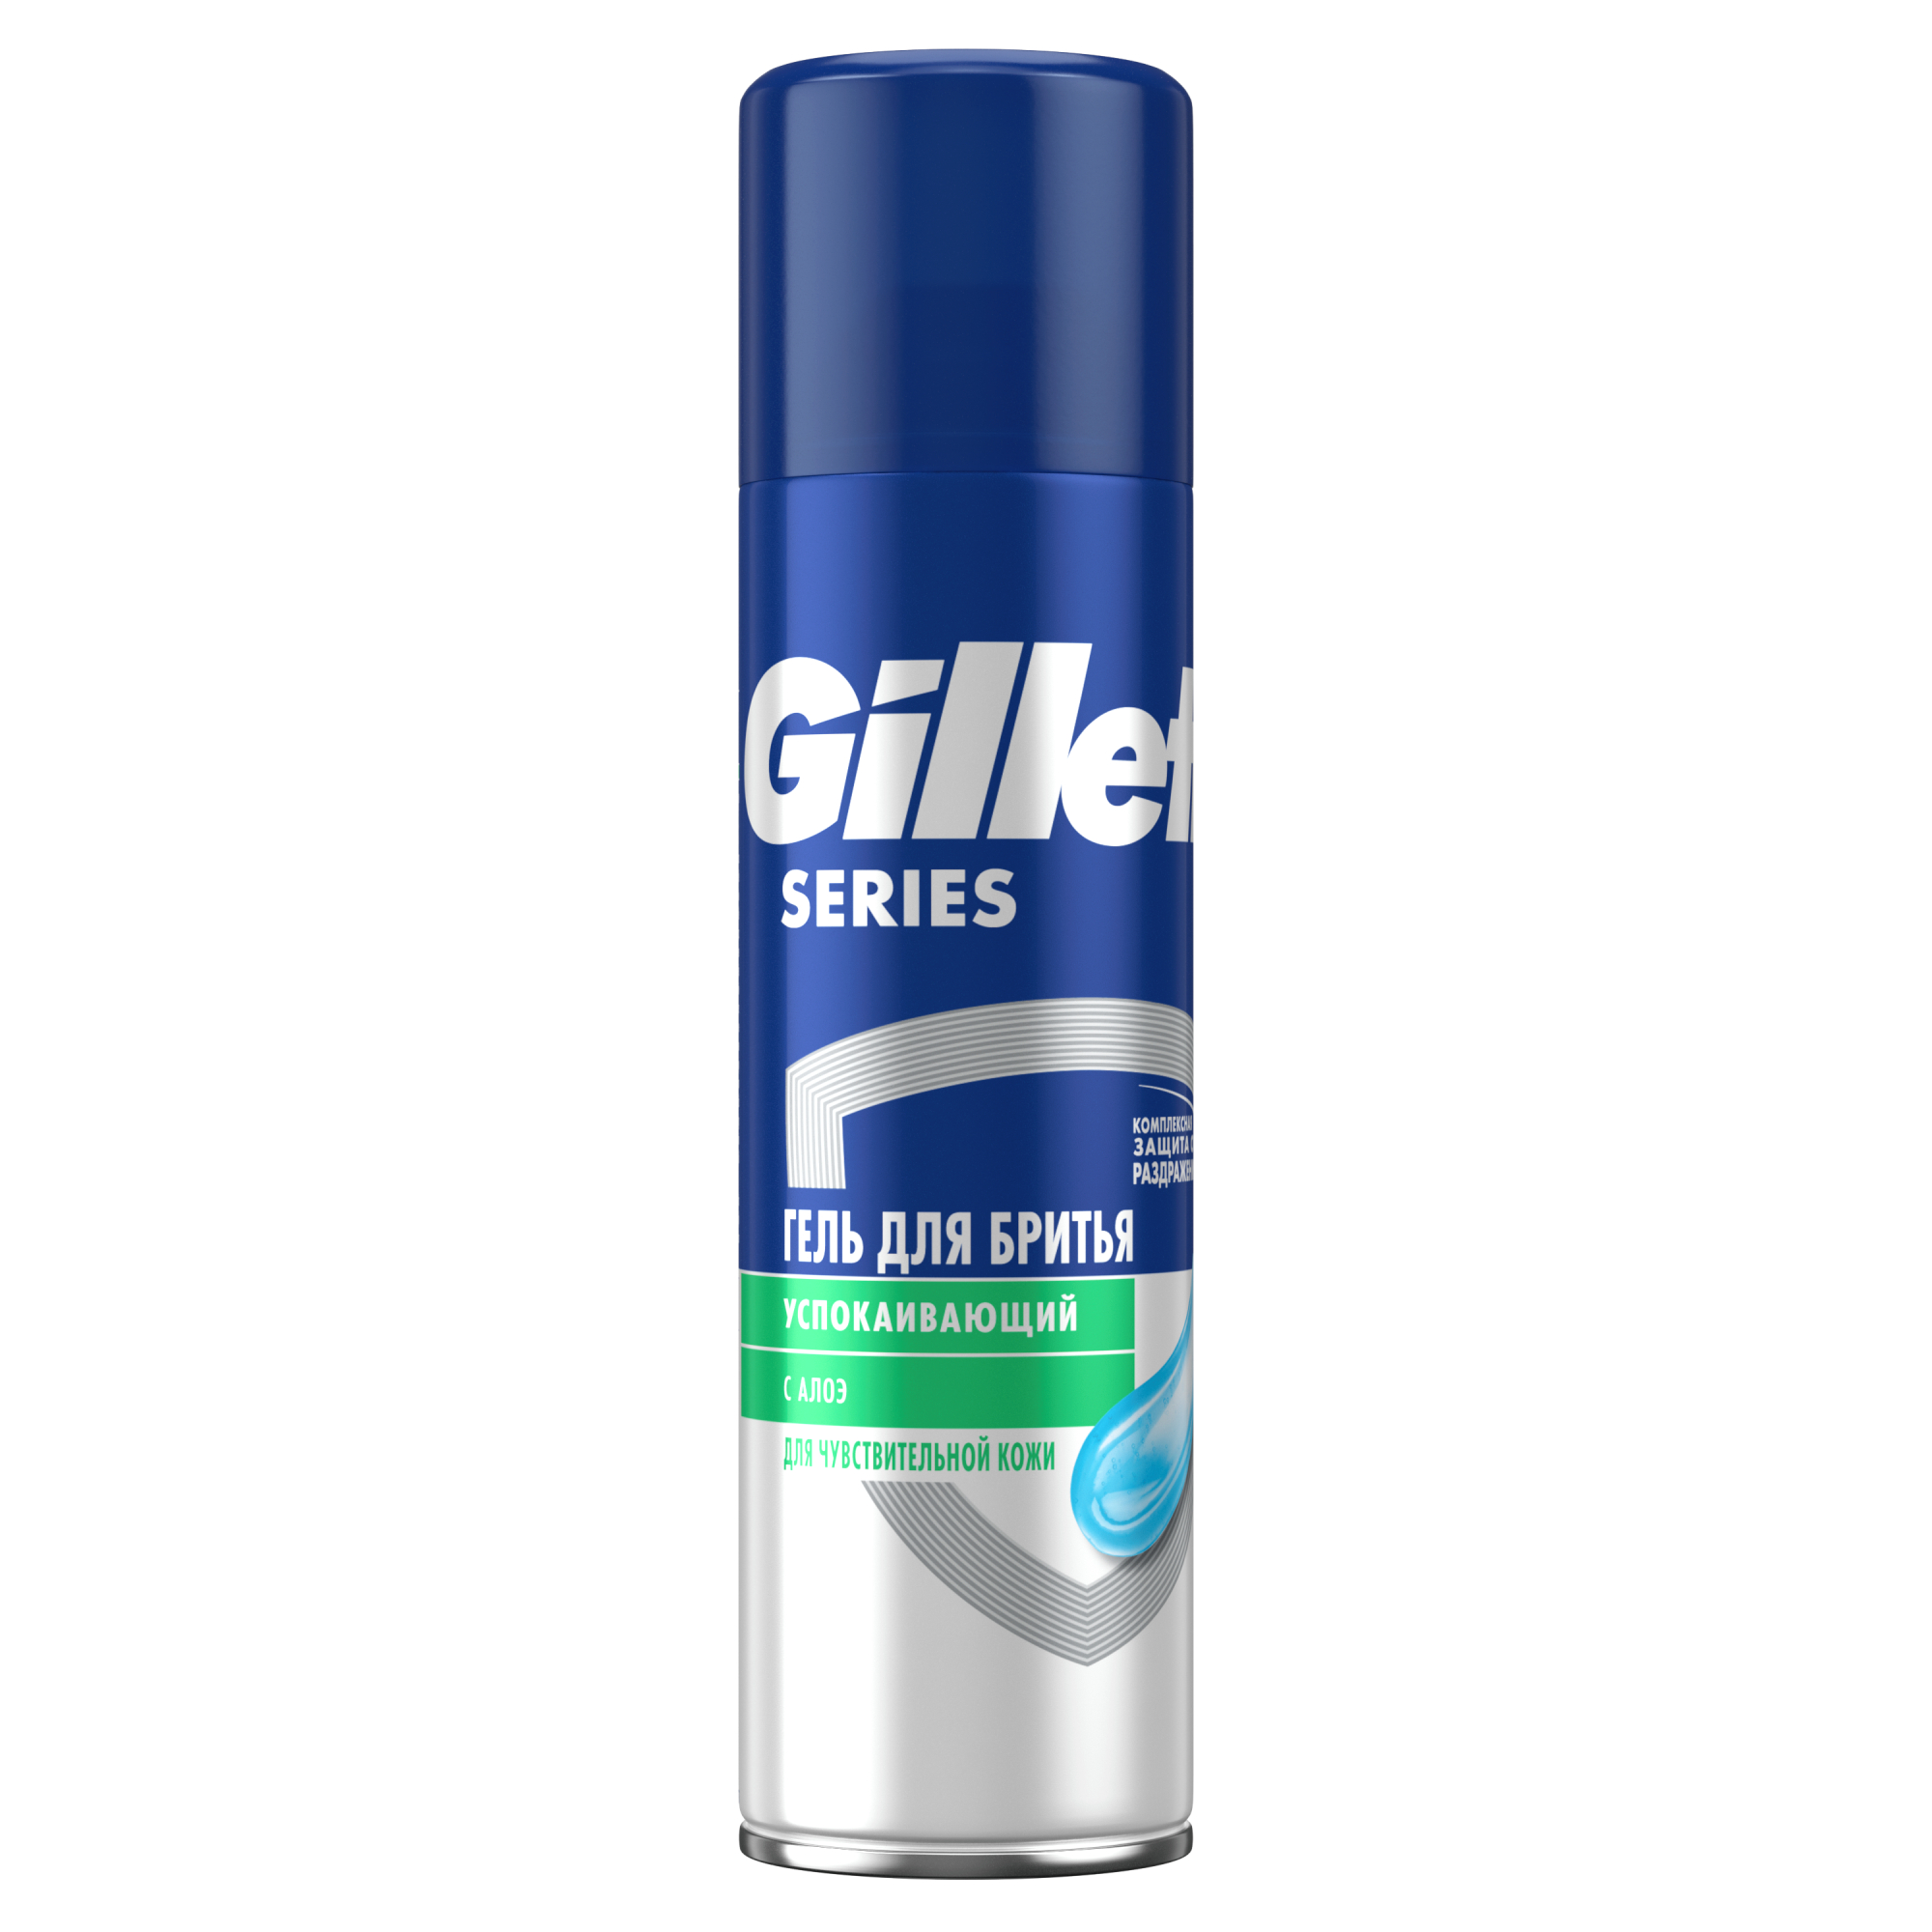 Гель для бритья Gillette Series Sensitive, для чувствительной кожи, мужской, 200 мл гель для бритья gillette tgs для чувствительной кожи очищающий с углем 200 мл